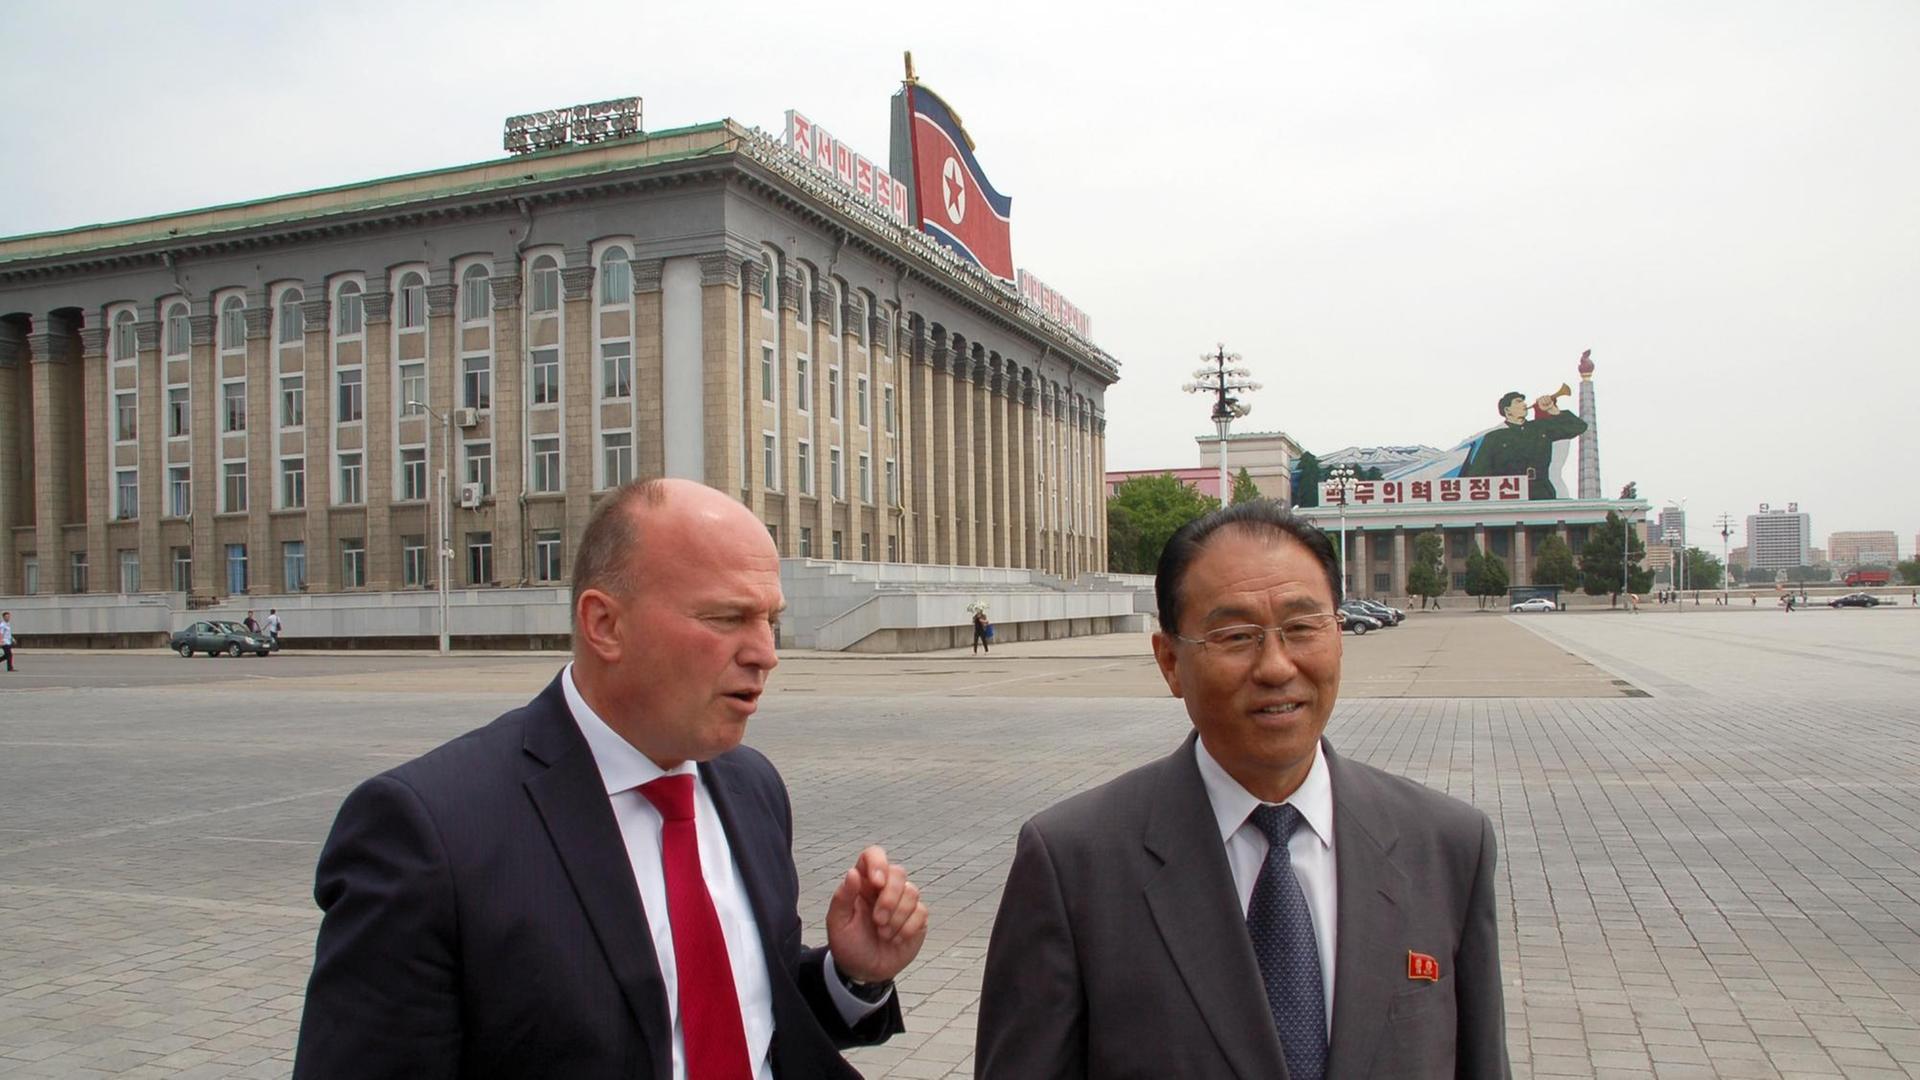 Der Vorsitzende der deutsch-koreanischen Parlamentariergruppe, Hartmut Koschyk (CSU, l), und Nordkoreas Vizeaußenminister Kung Sok Ung treffen sich am 01.06.2015 in Pjöngjang